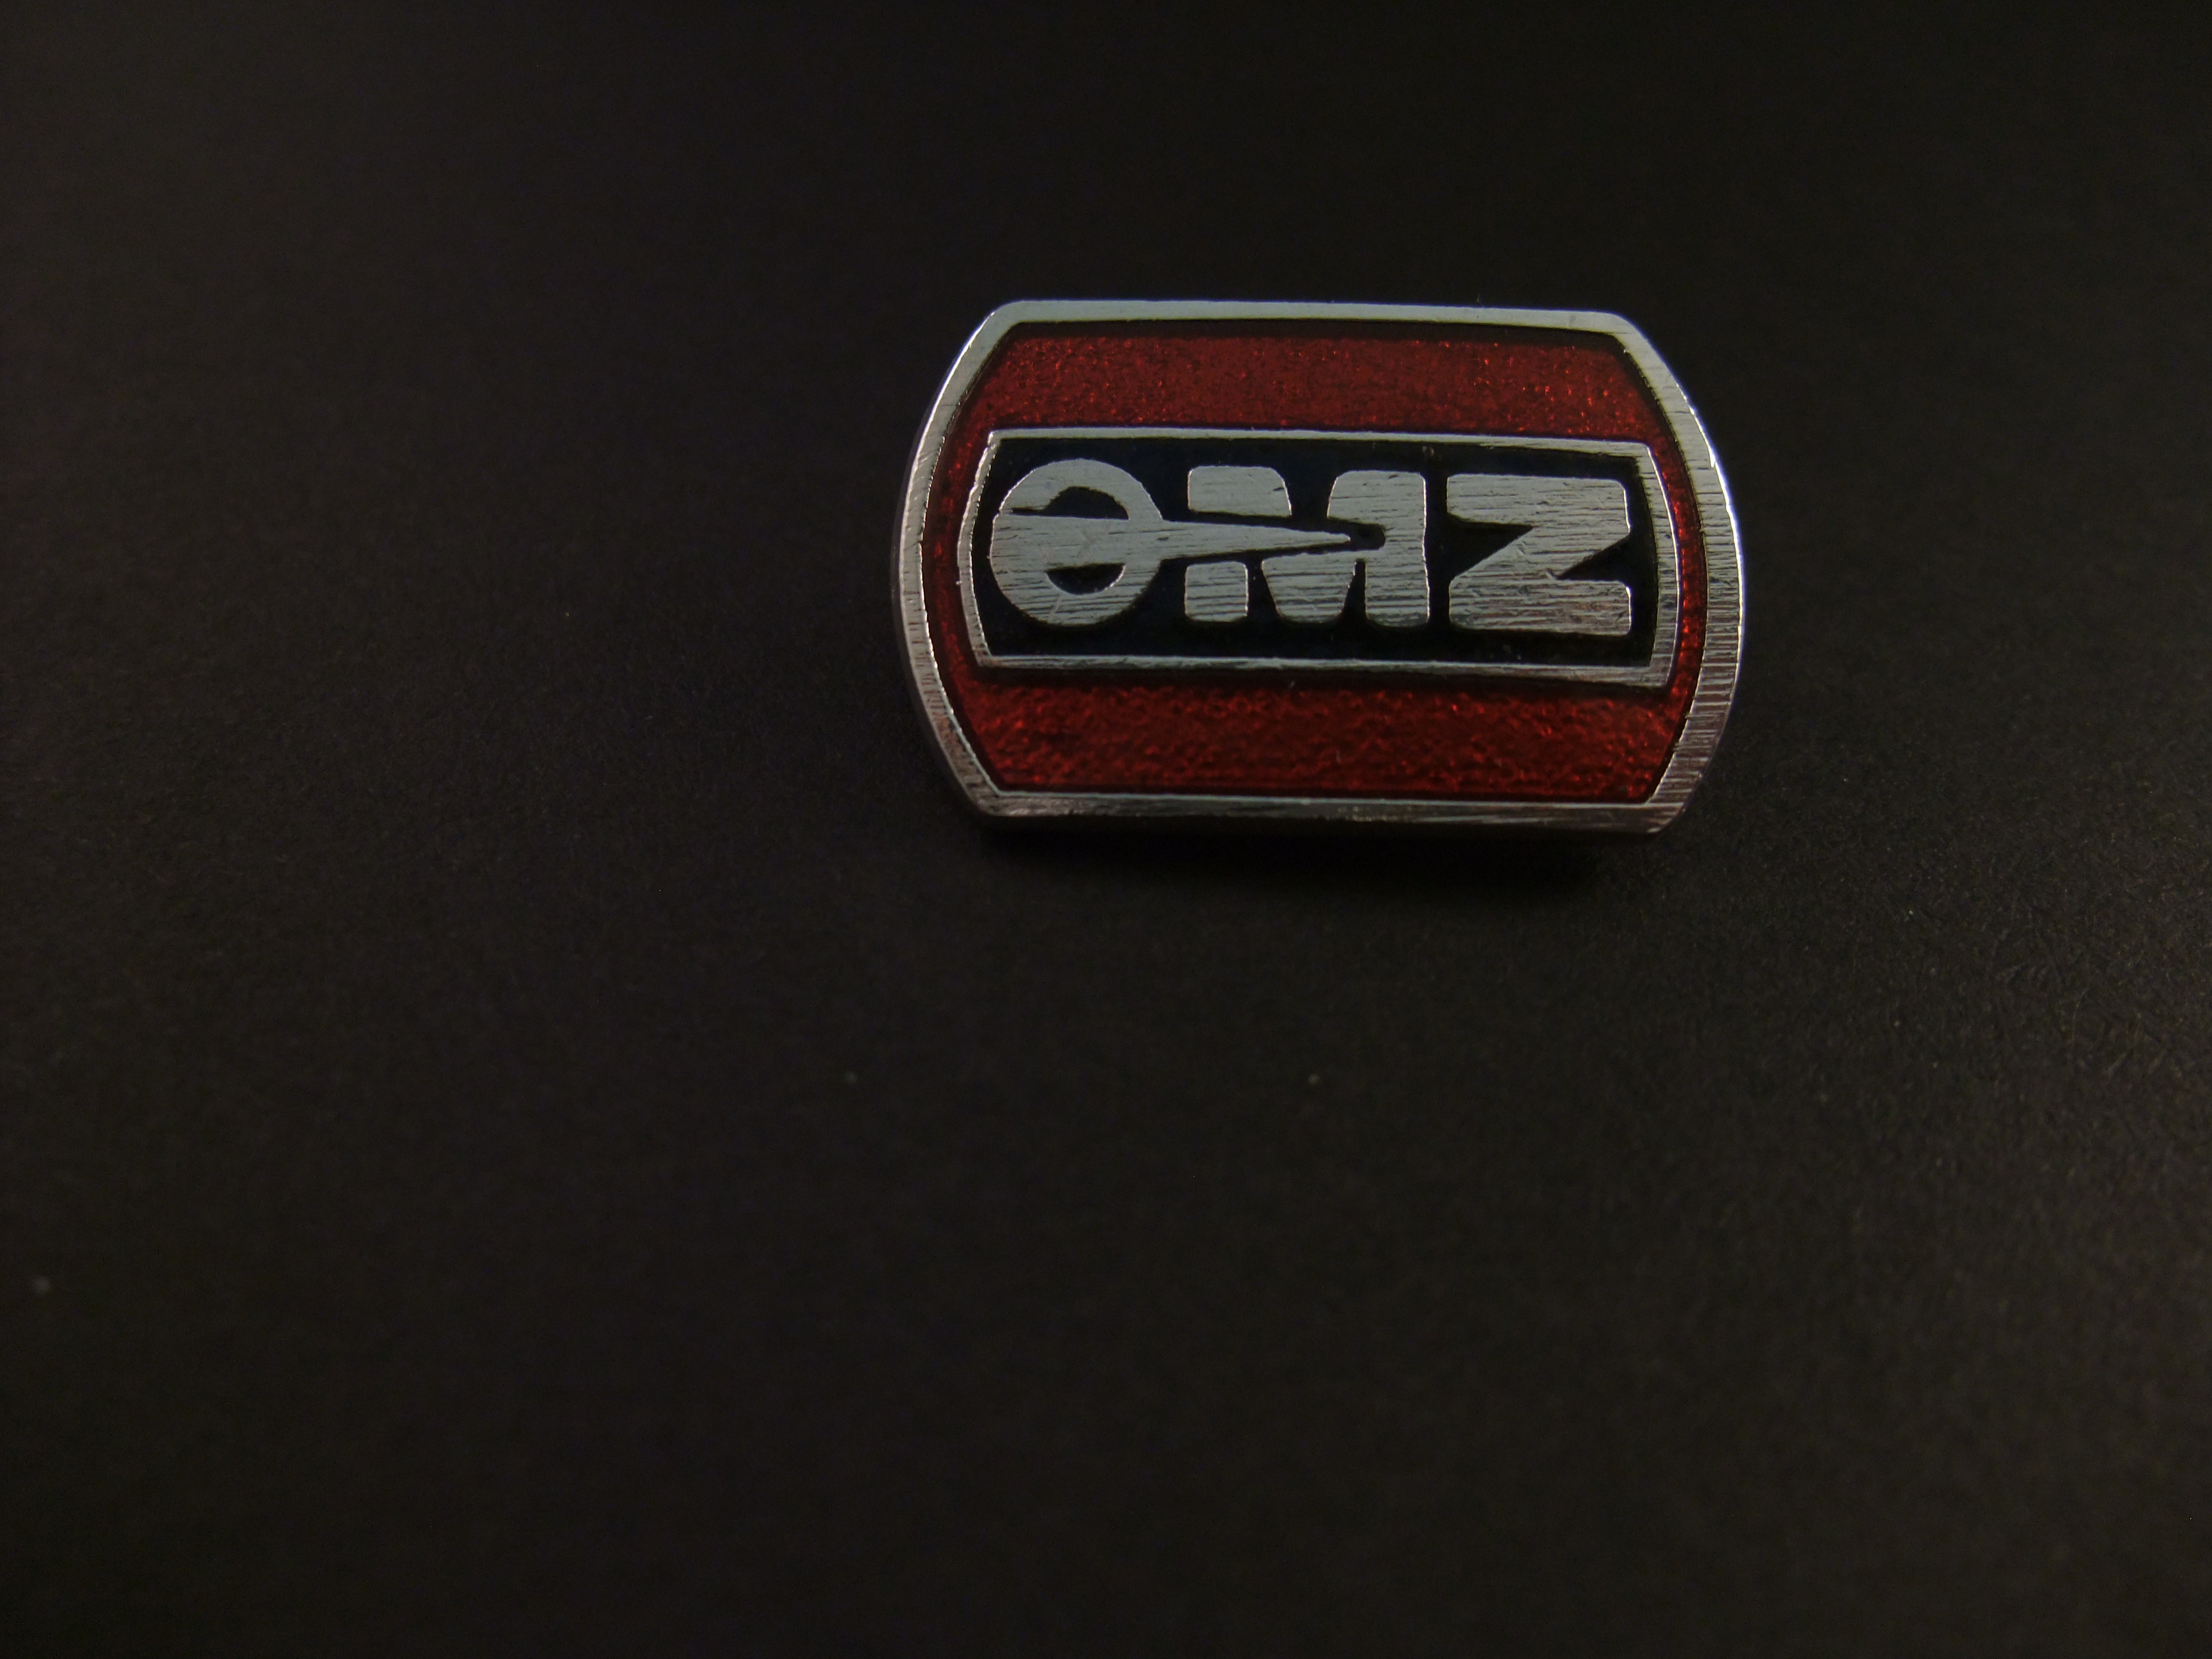 MZ( Motorradwerk Zschopau) Motorcycle ( Duits motorfietsmerk) logo